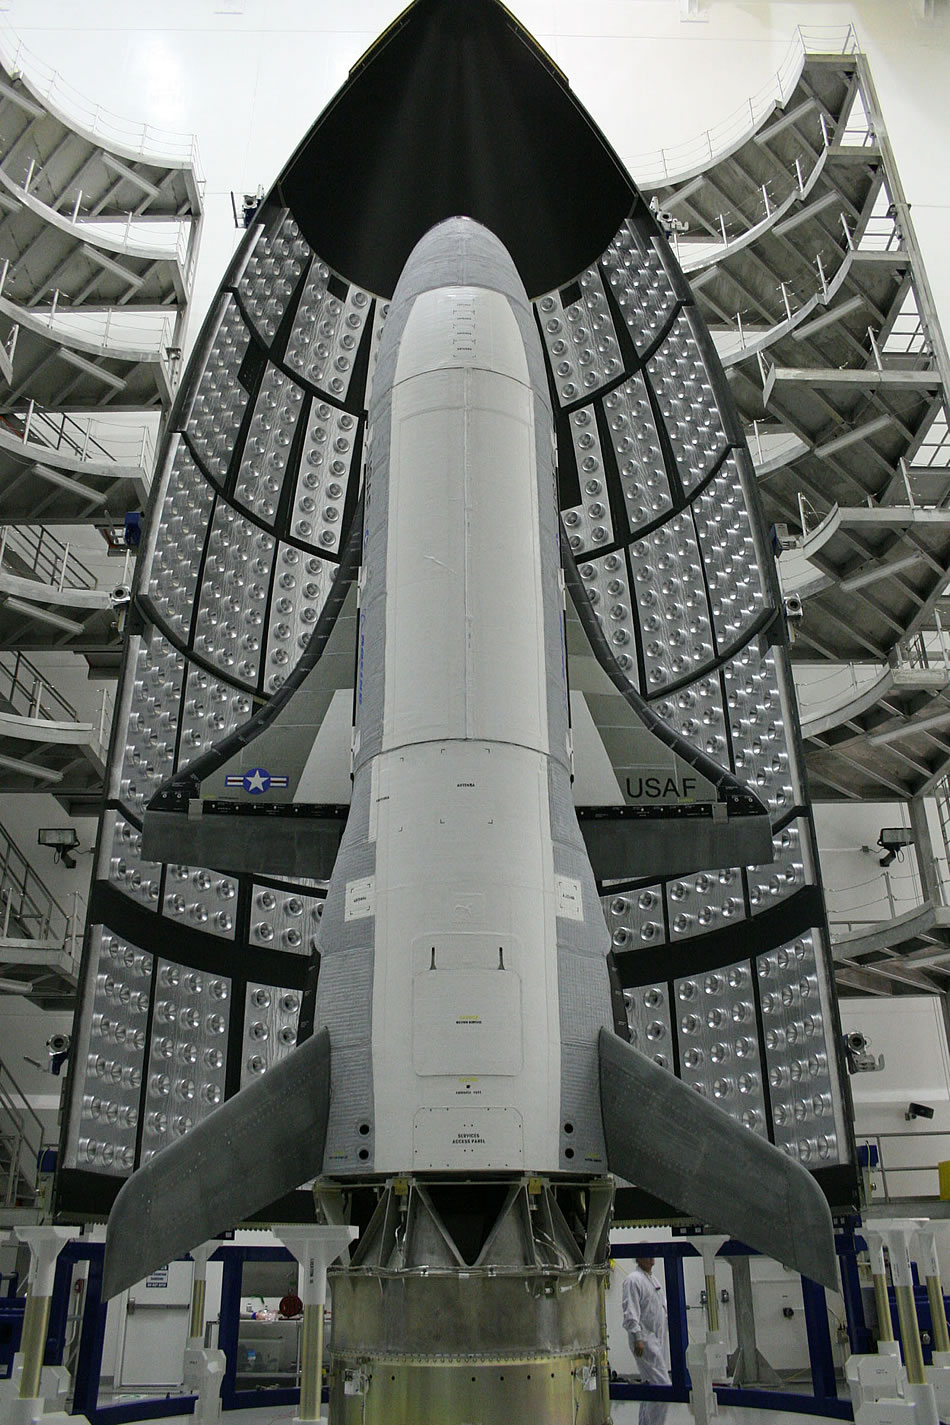 X37B Orbital Vehicle